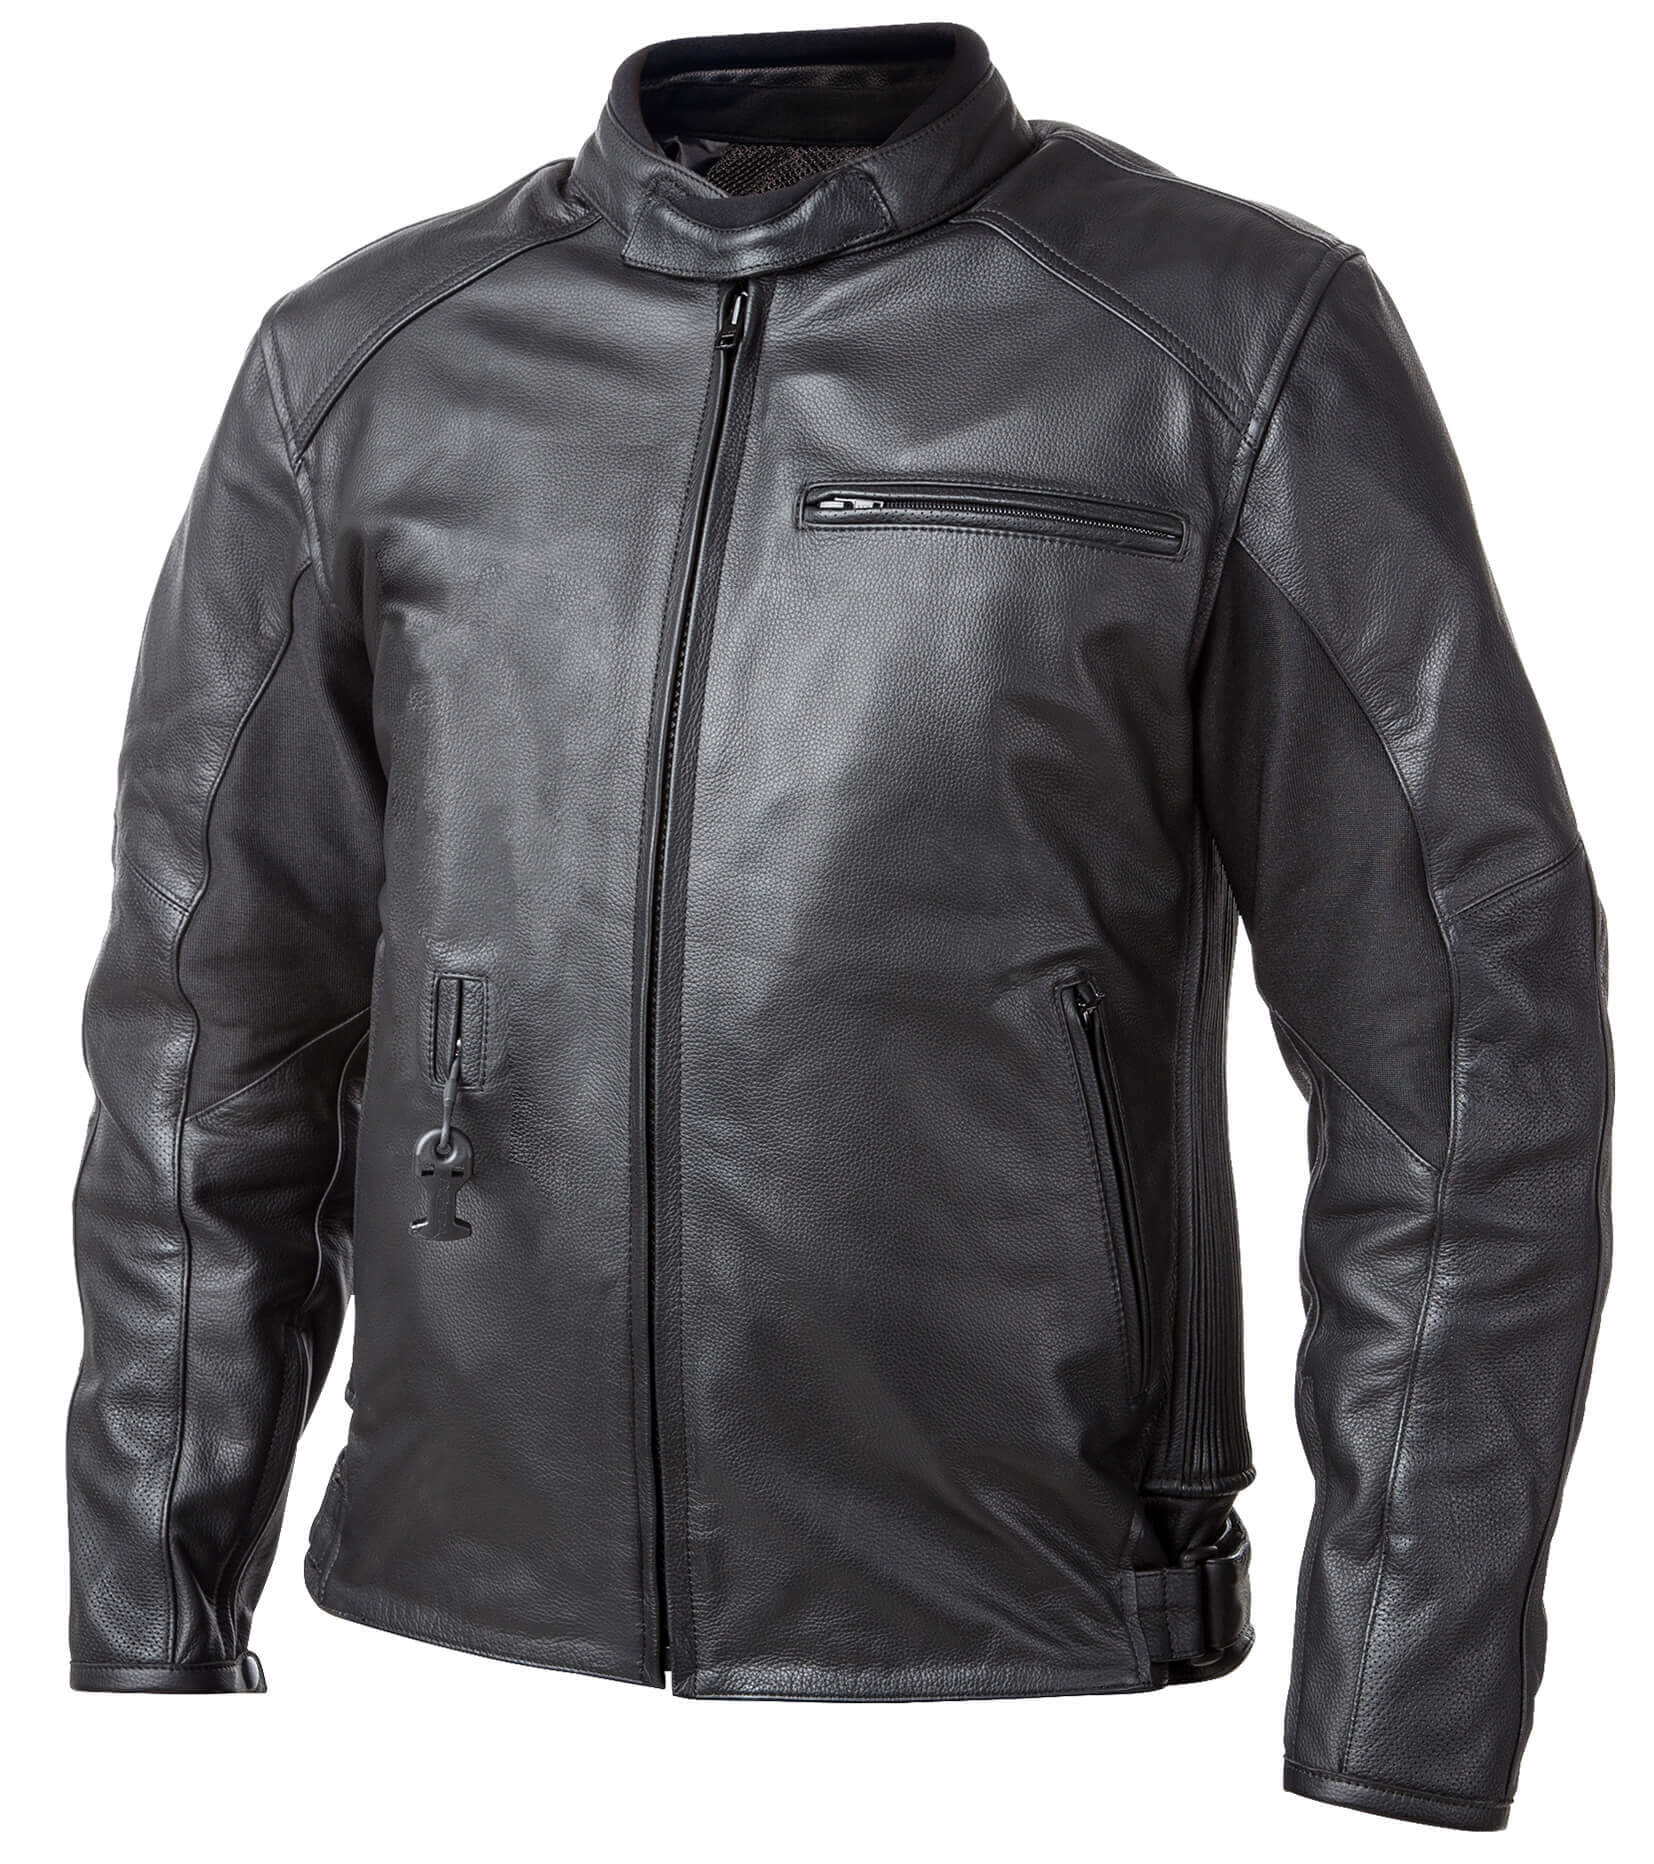 Airbag kabát Helite Roadster Vintage fekete bőr  Fekete  XL